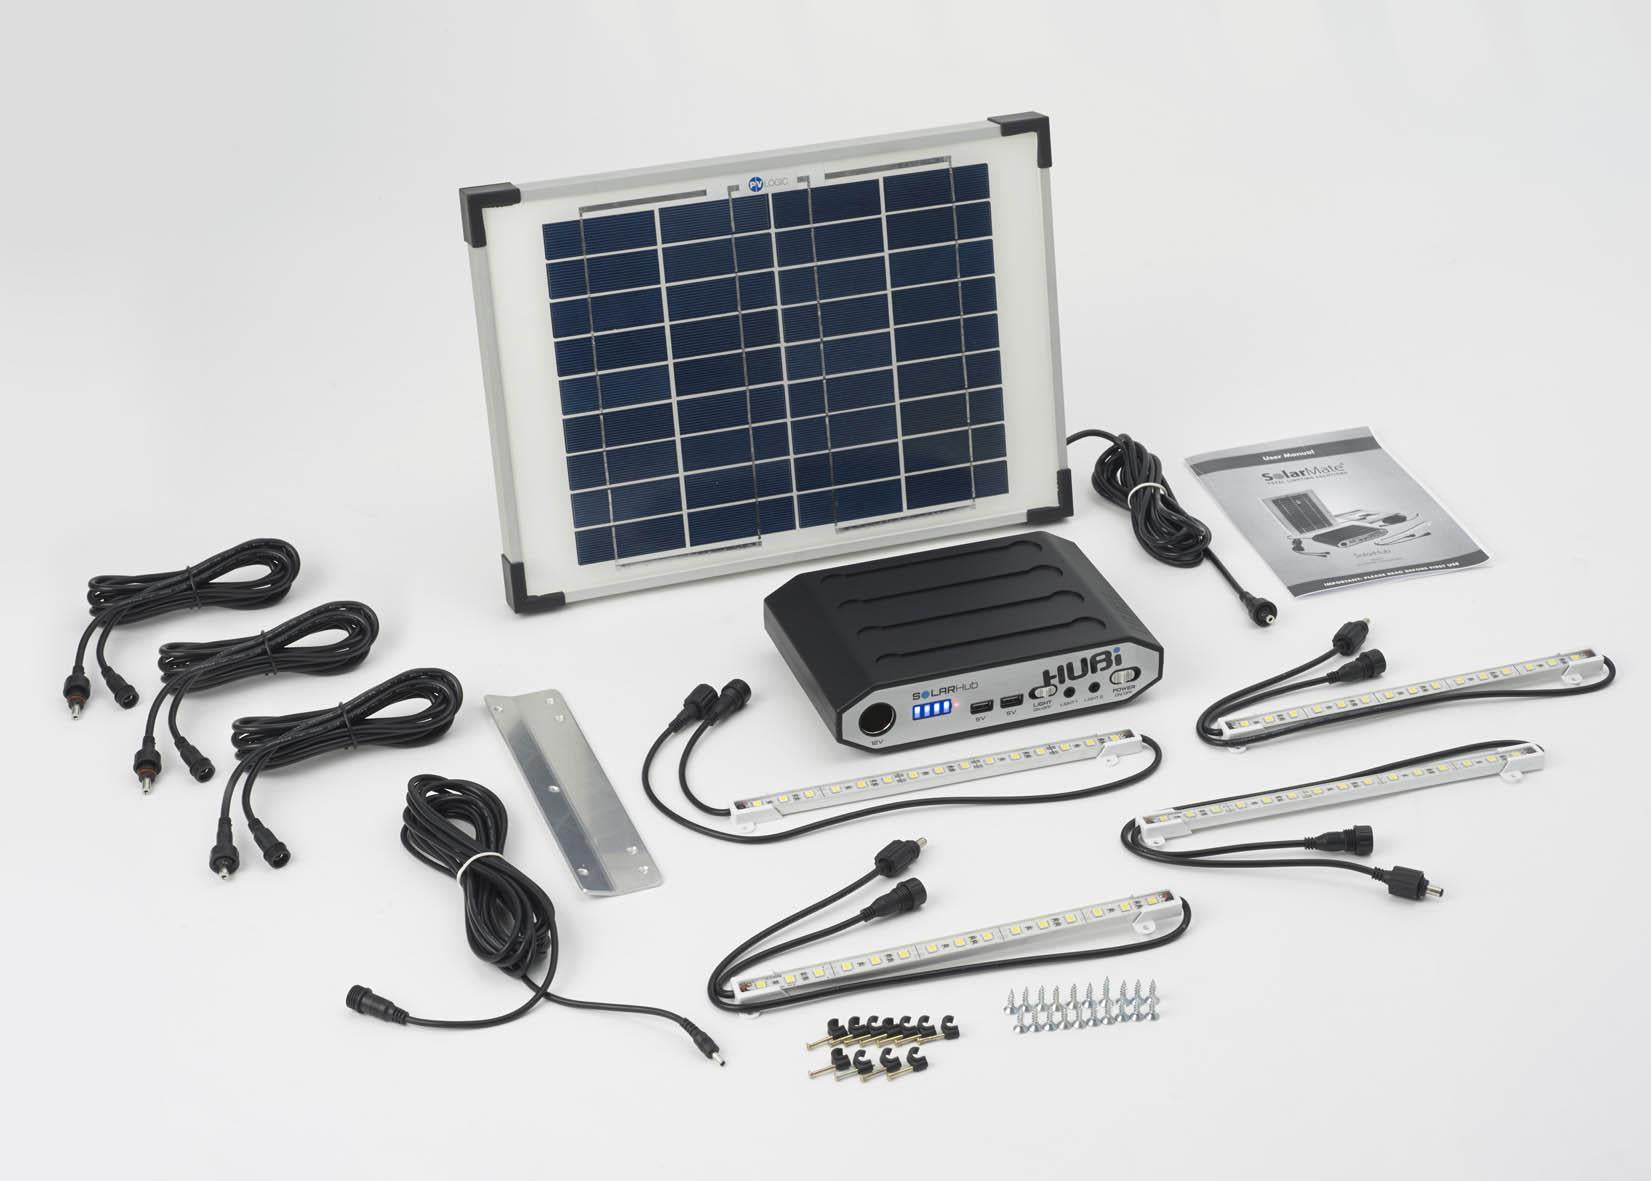 Hubi 10W Work 64 Solar Light & Power Kit for Off Grid Buildings